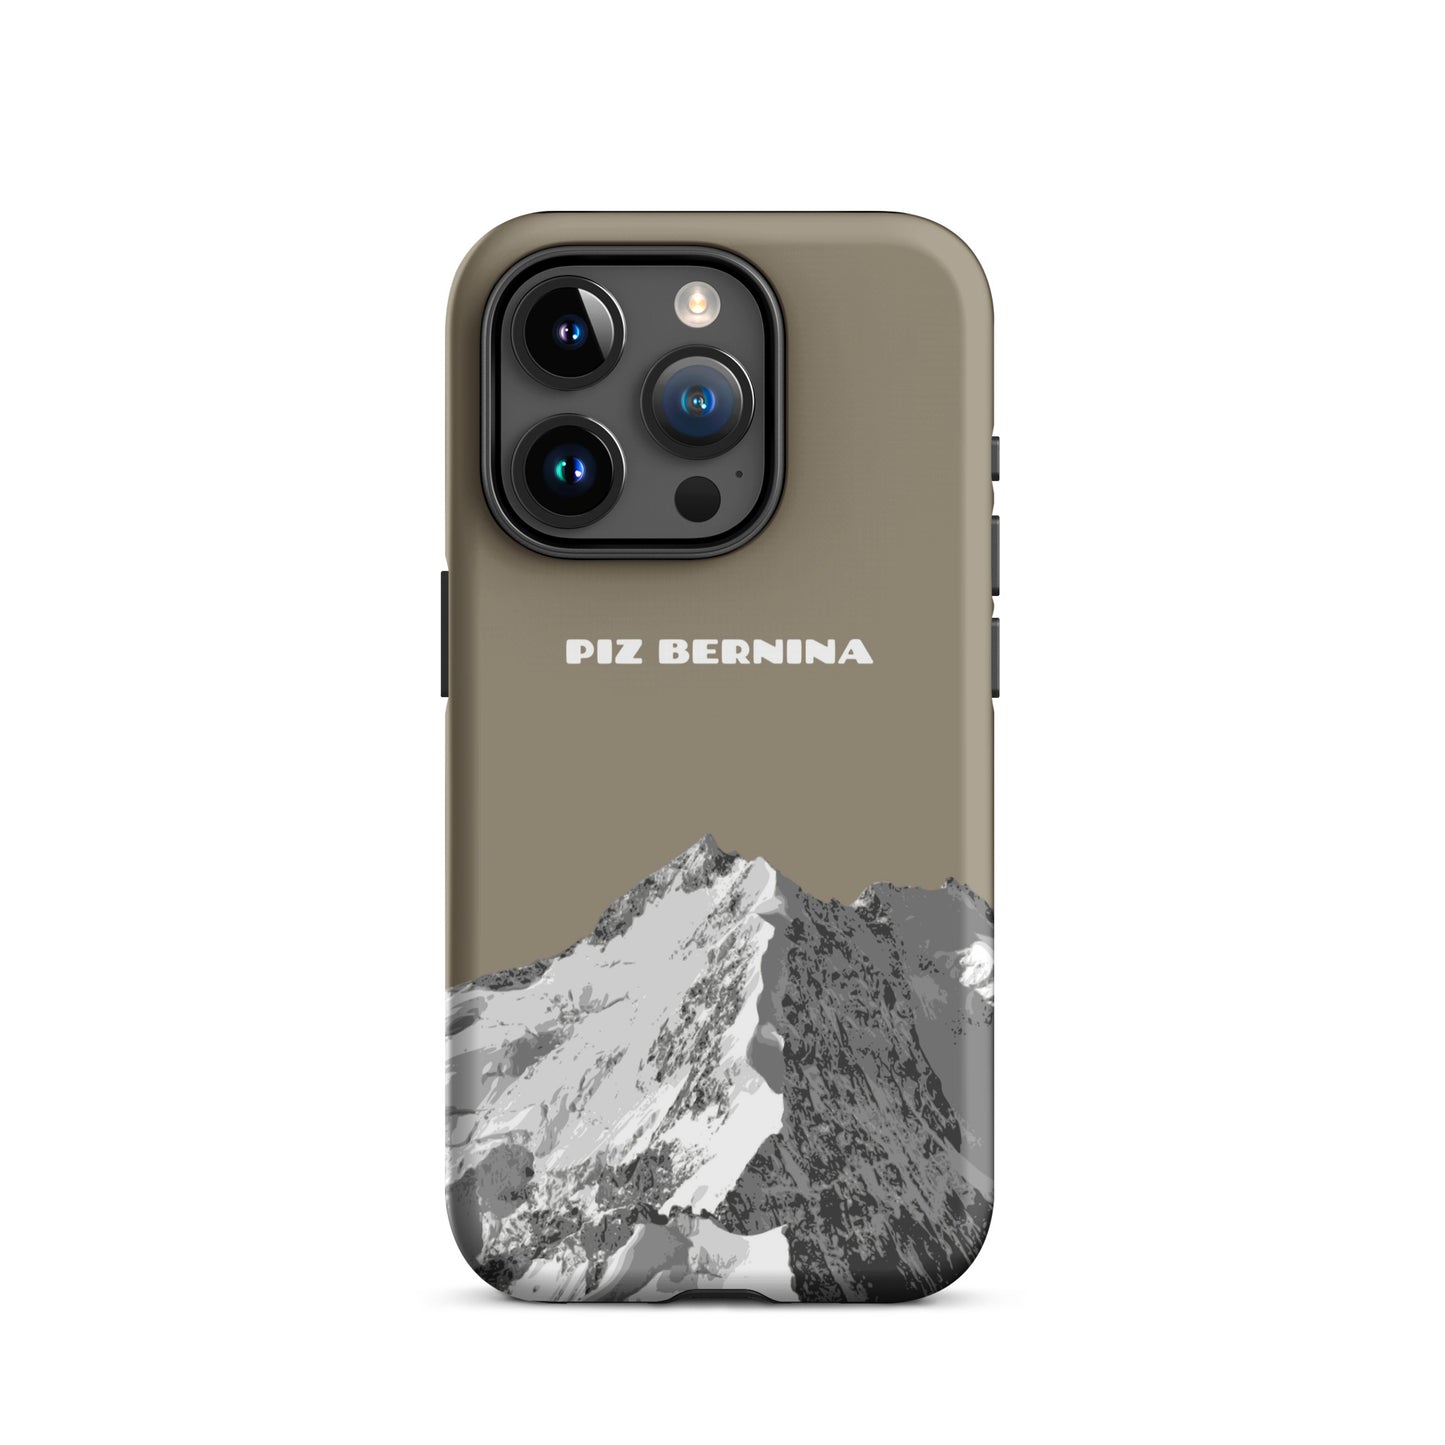 Hülle für das iPhone 15 Pro von Apple in der Farbe Graubraun, dass den Piz Bernina in Graubünden zeigt.